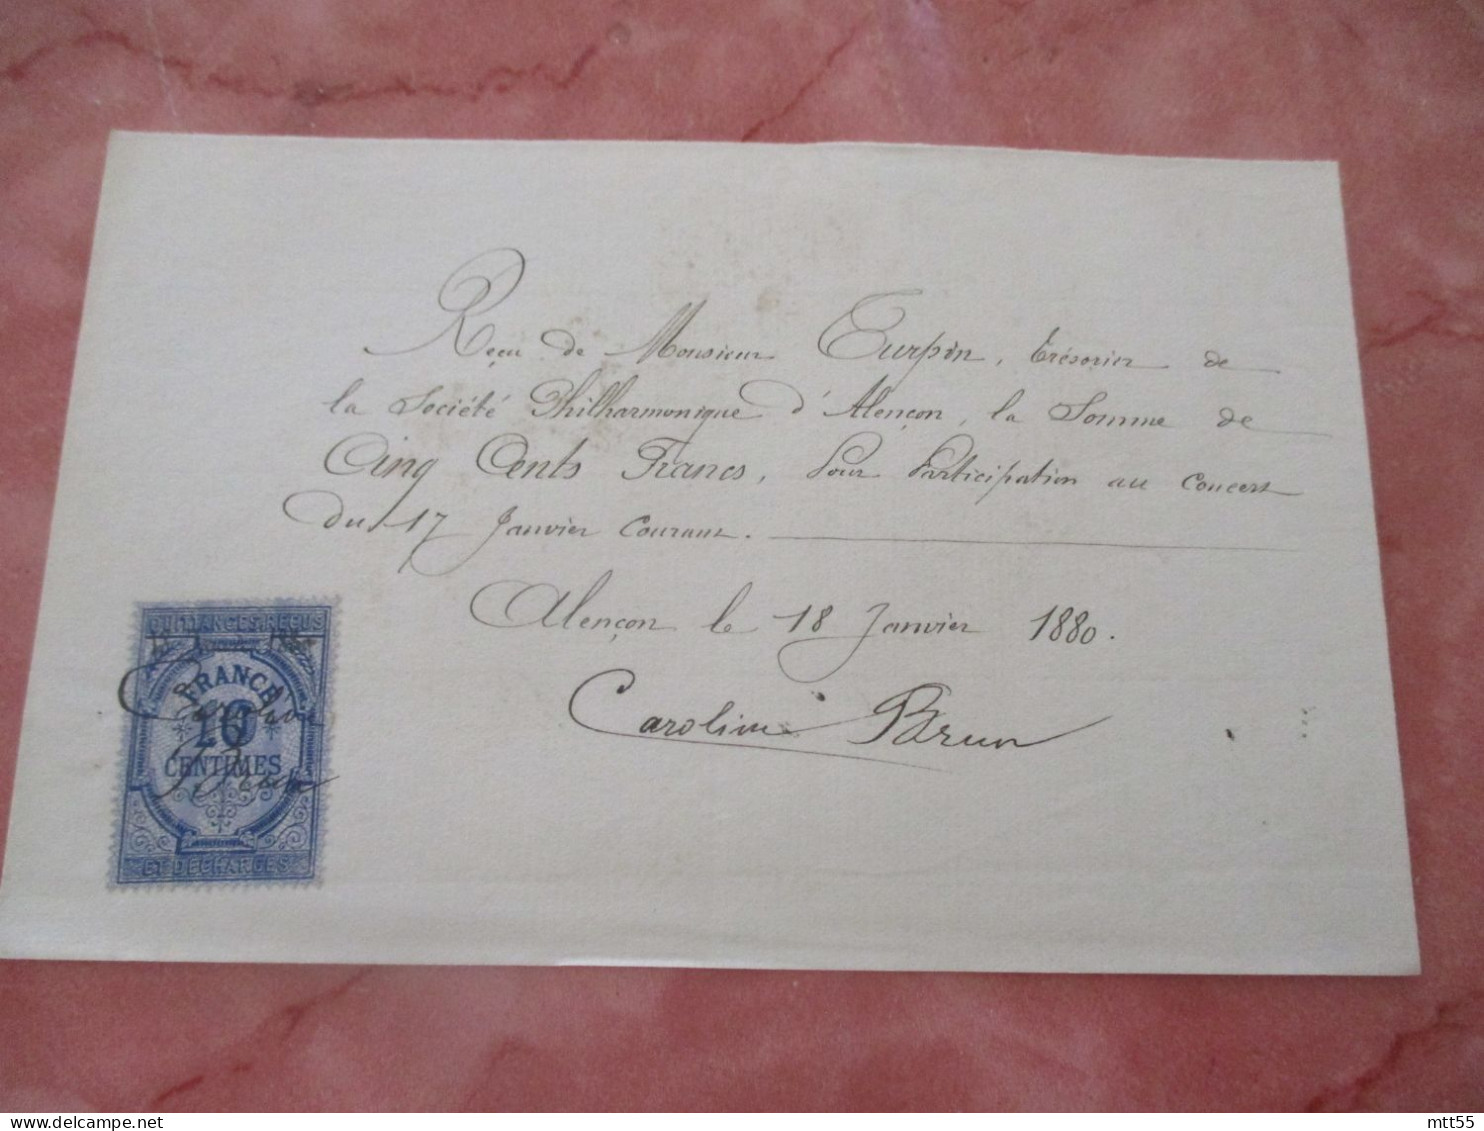 CAROLINE BRUN CHANTEUR CONSERVATOIRE QUITTANCE MANUSCITE TIMBRE FISCAL 1885 CONCERCERT A ALENCON AUTOGRAPHE - Manuskripte